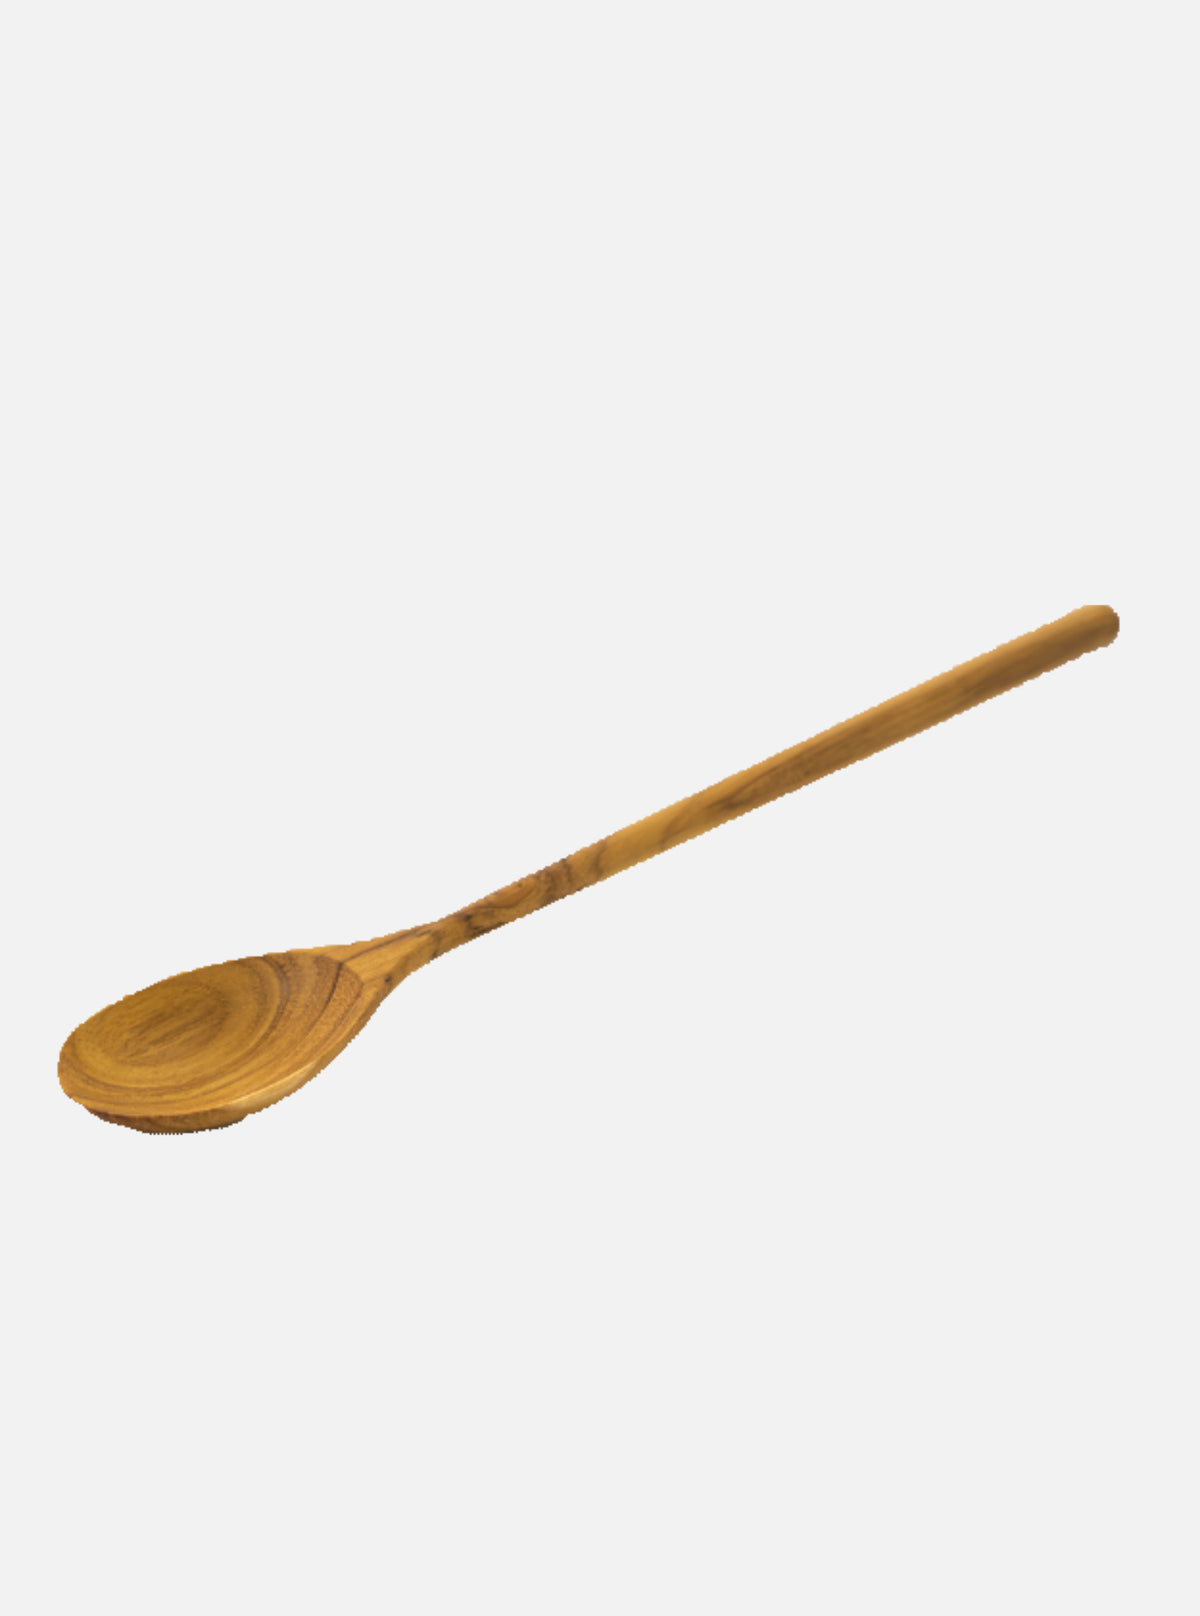 Teak Wooden Tasting Spoon